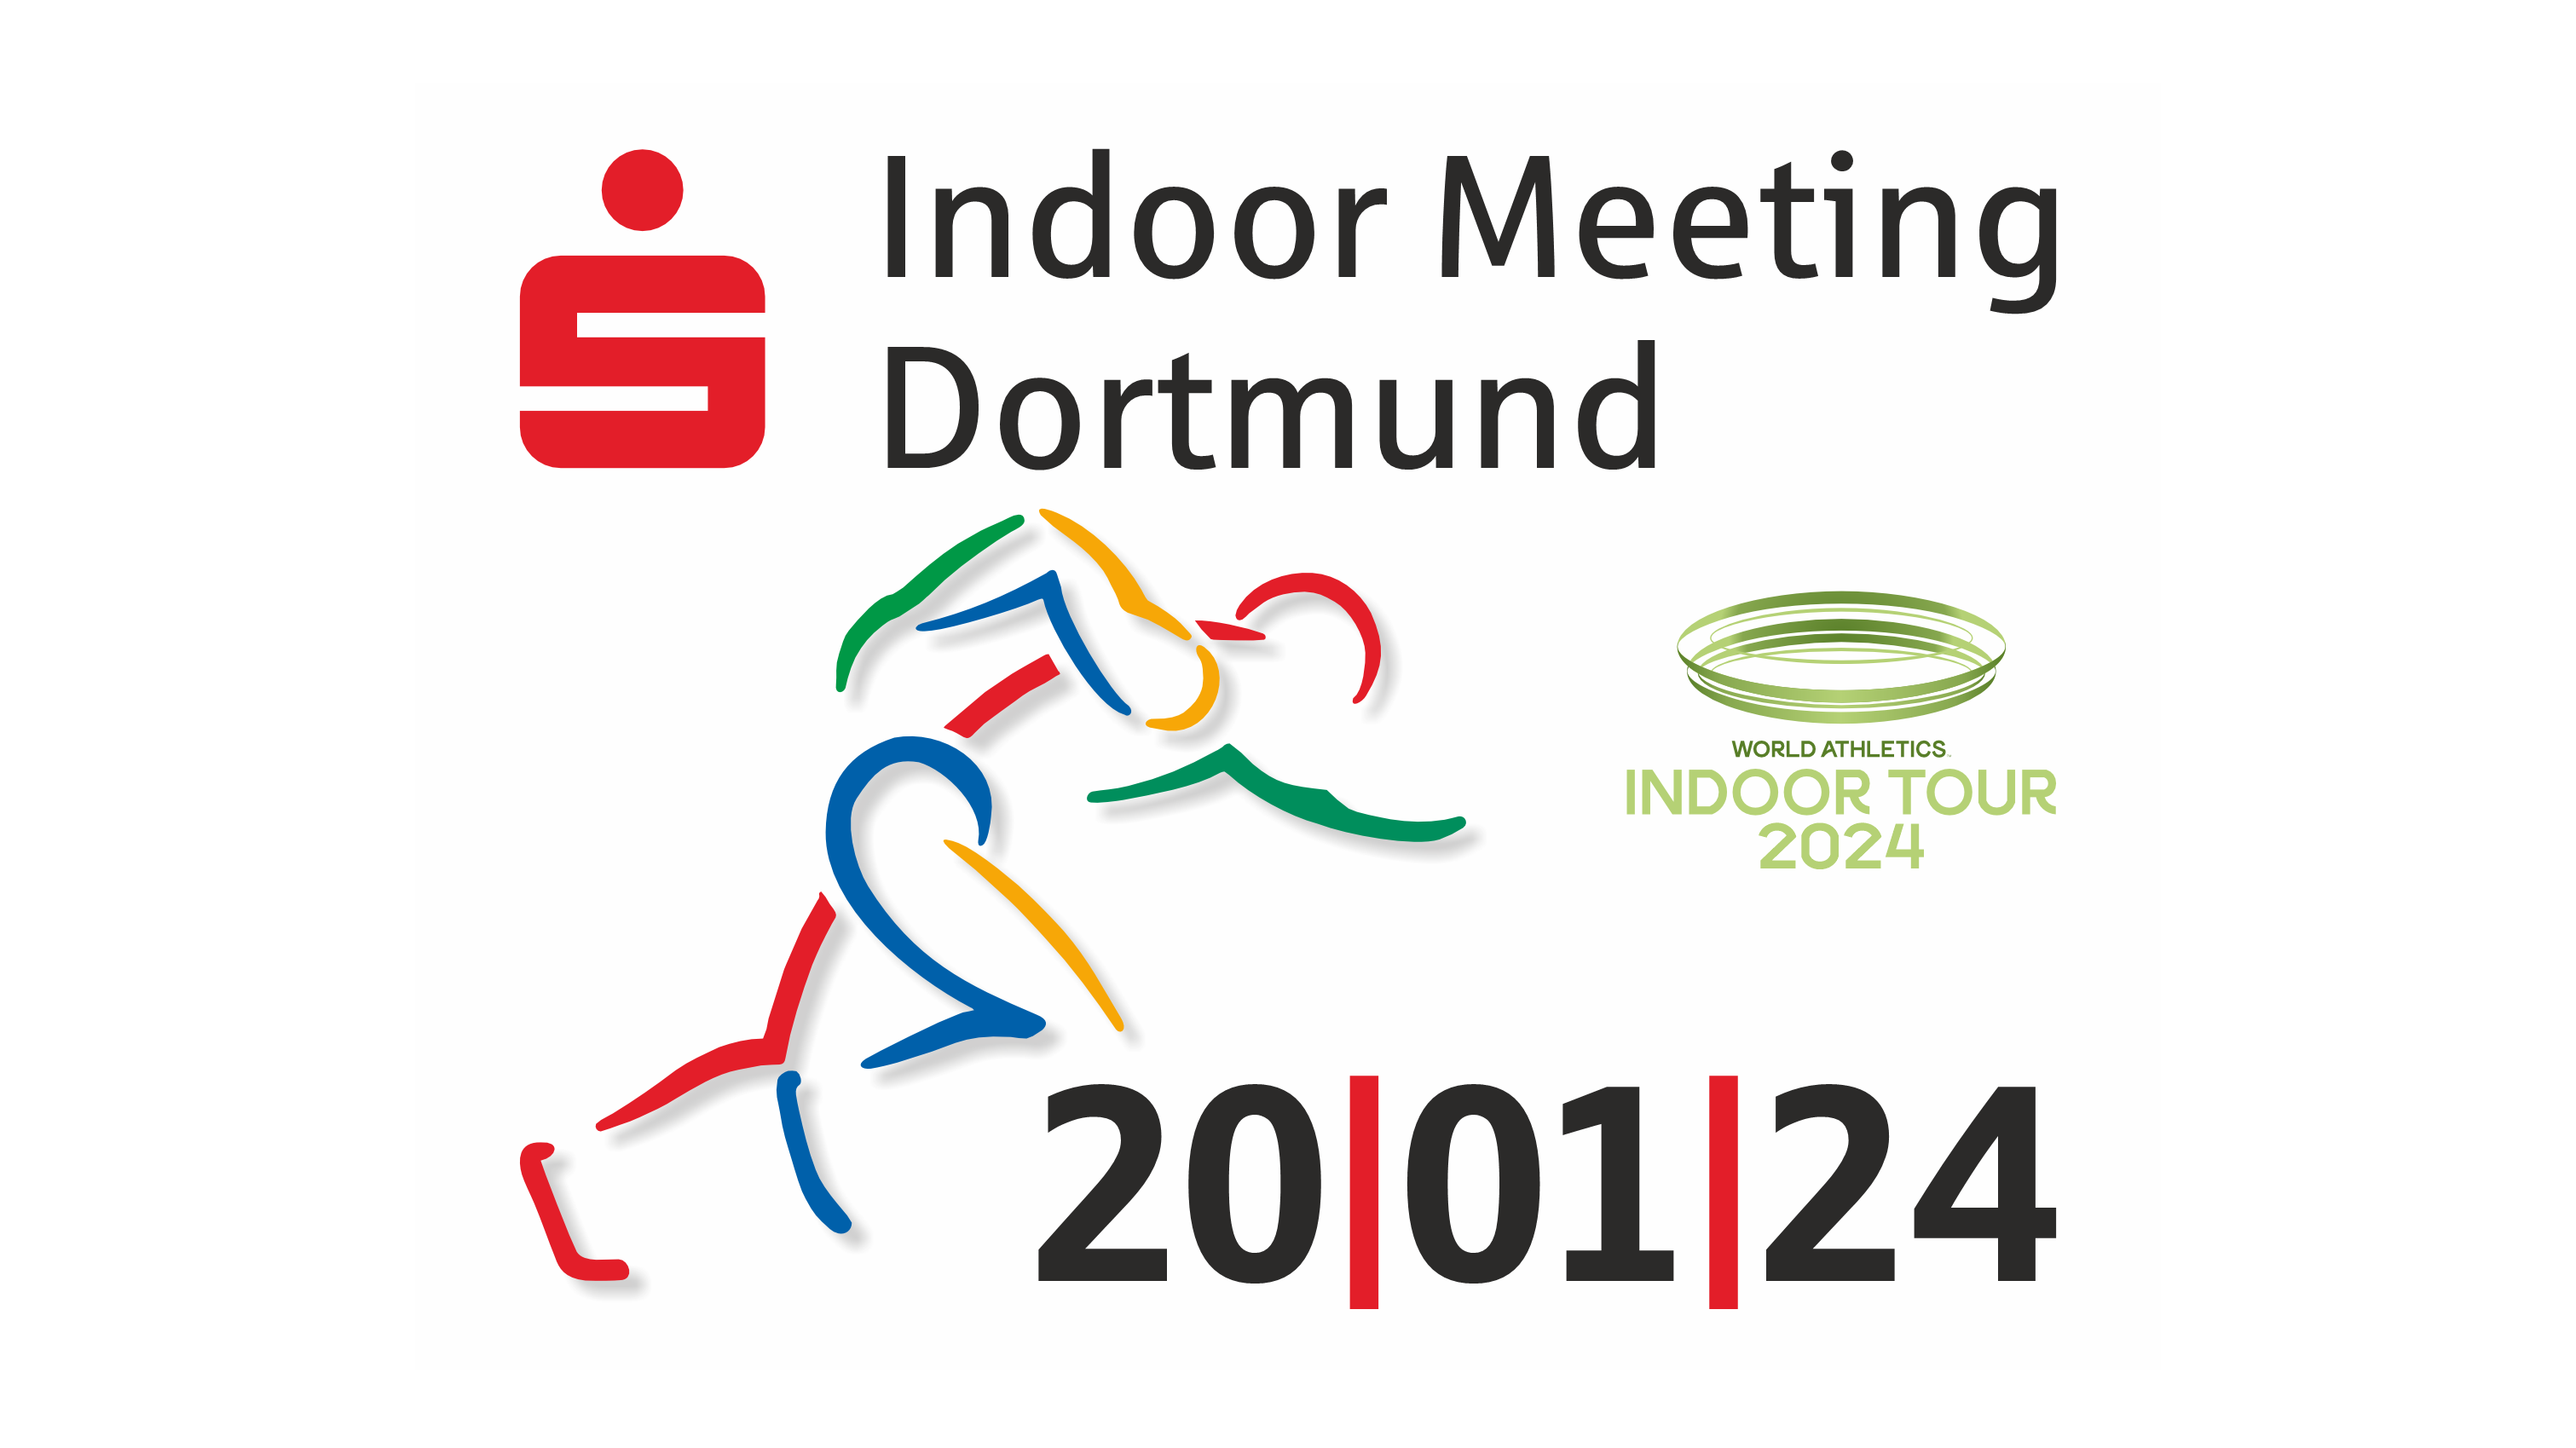 Sparkassen Indoor Meeting Dortmund